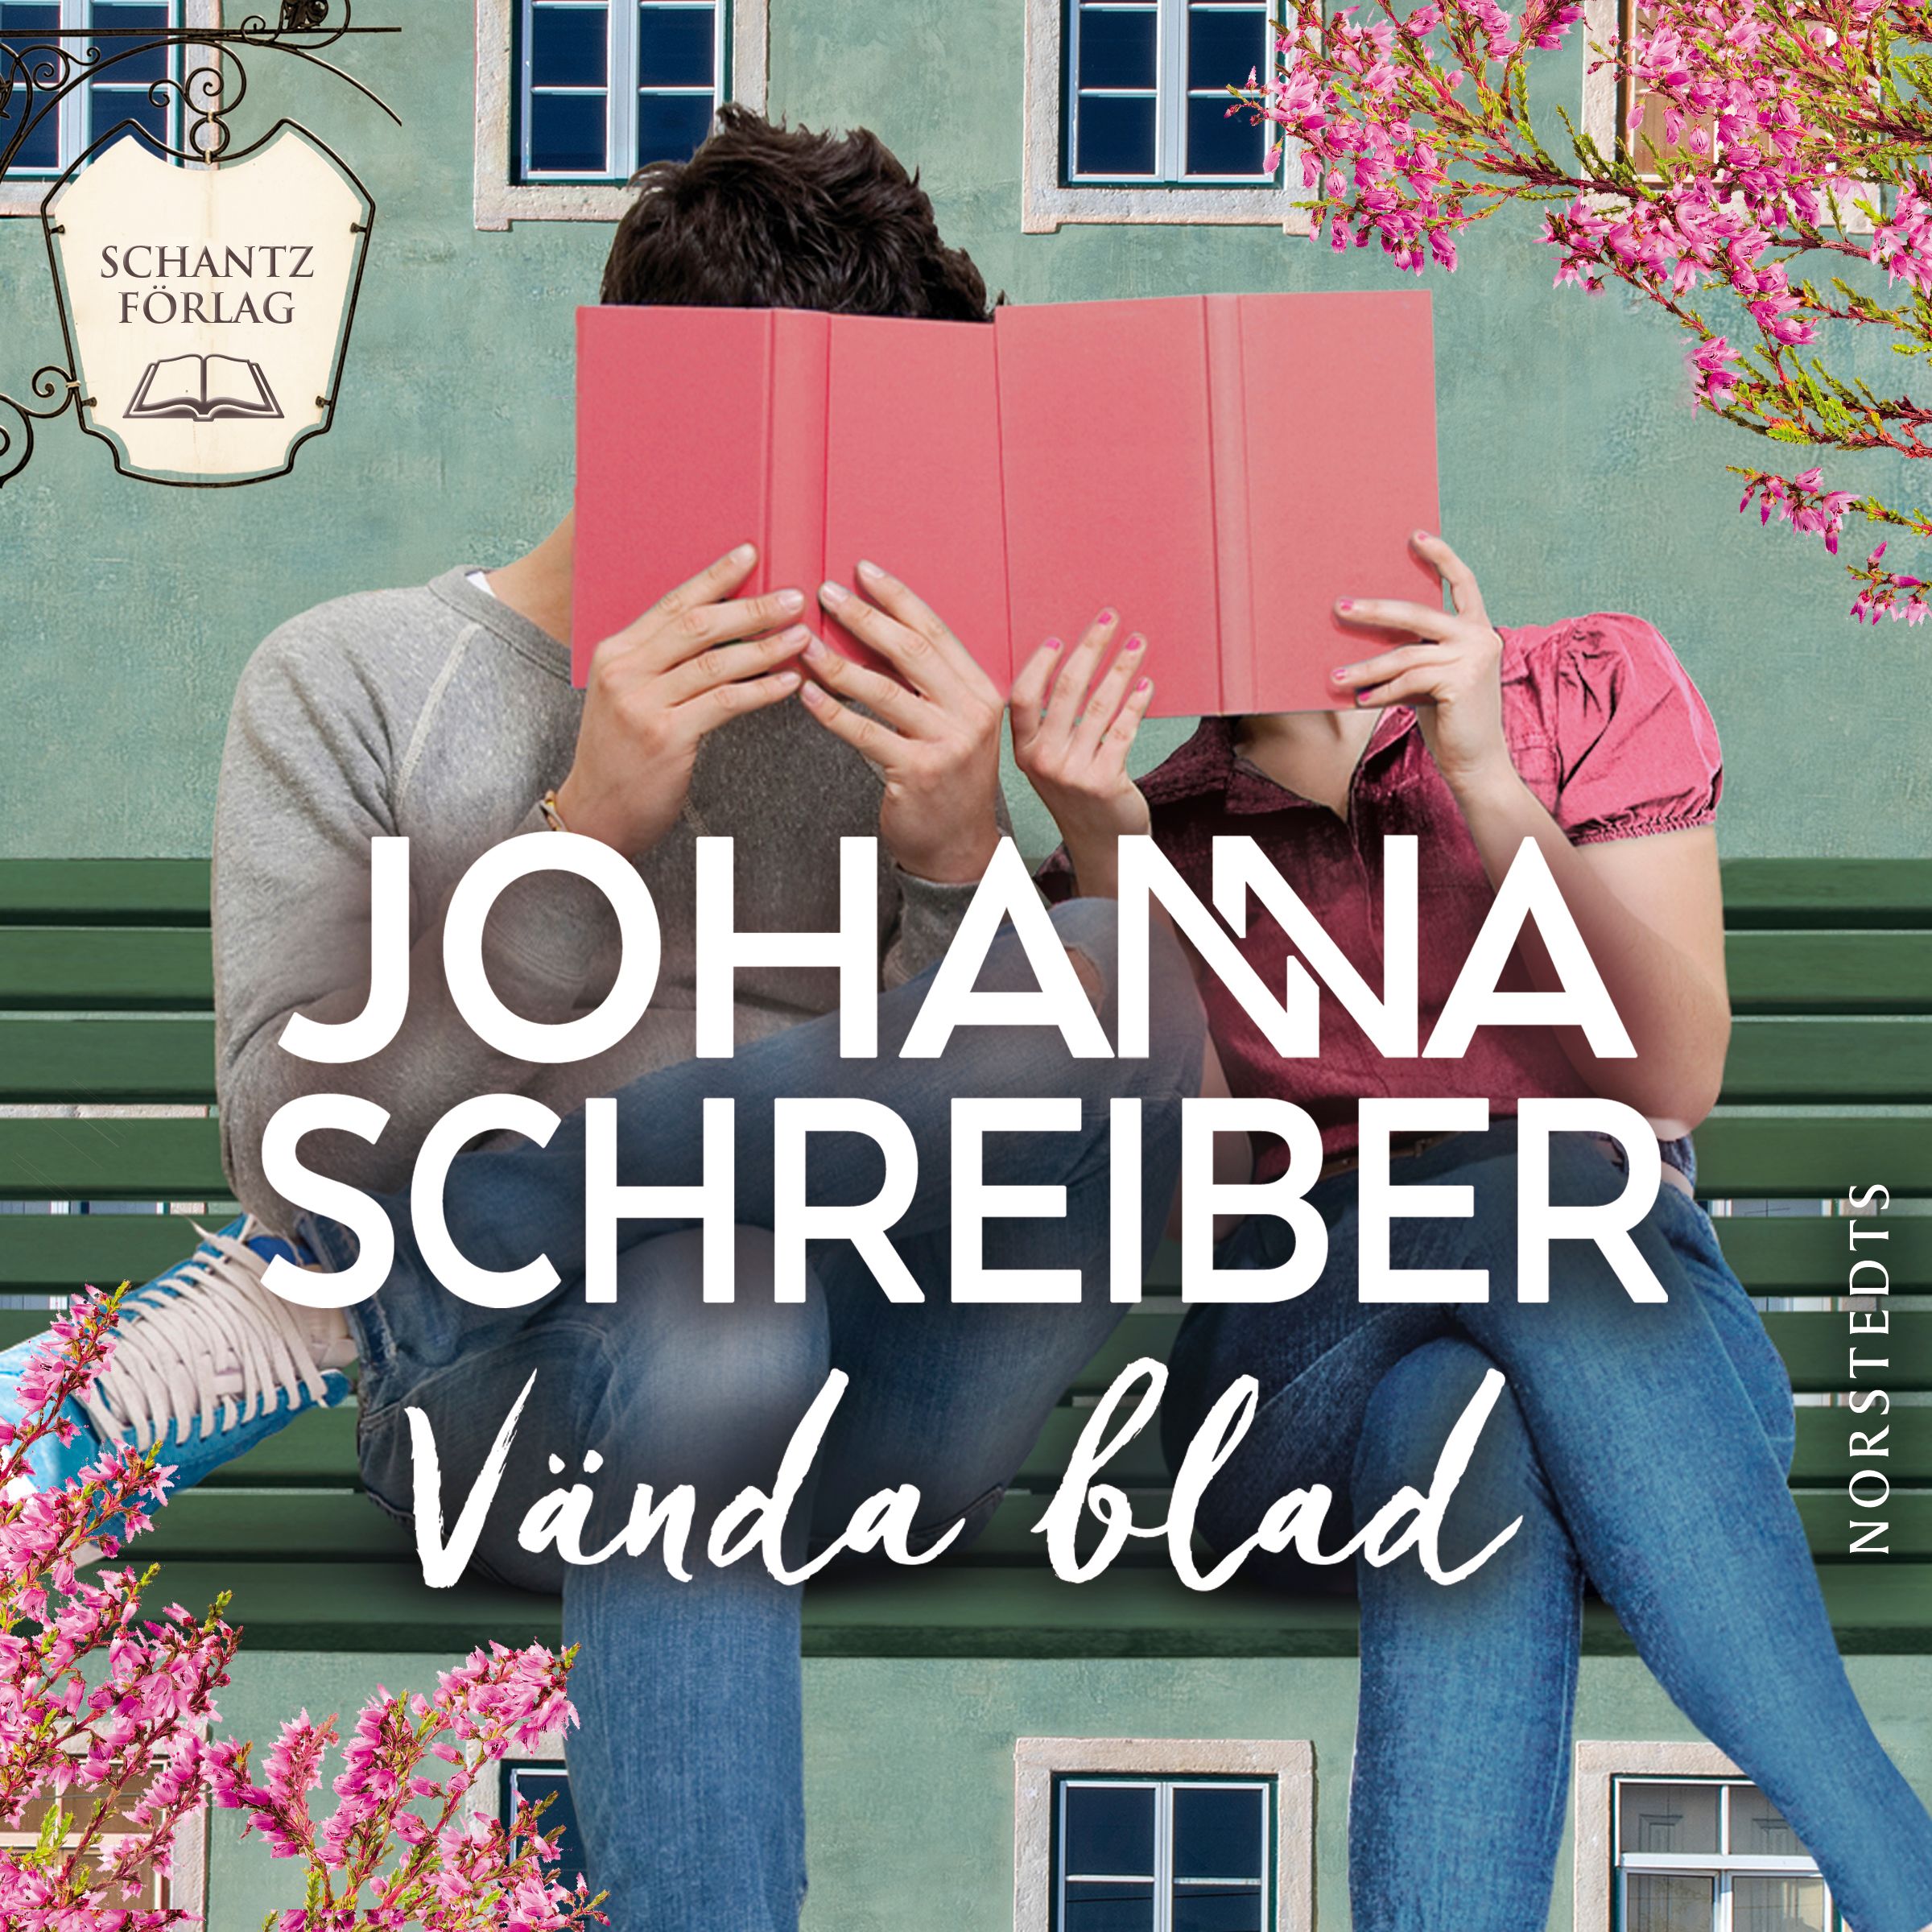 Vända blad, audiobook by Johanna Schreiber